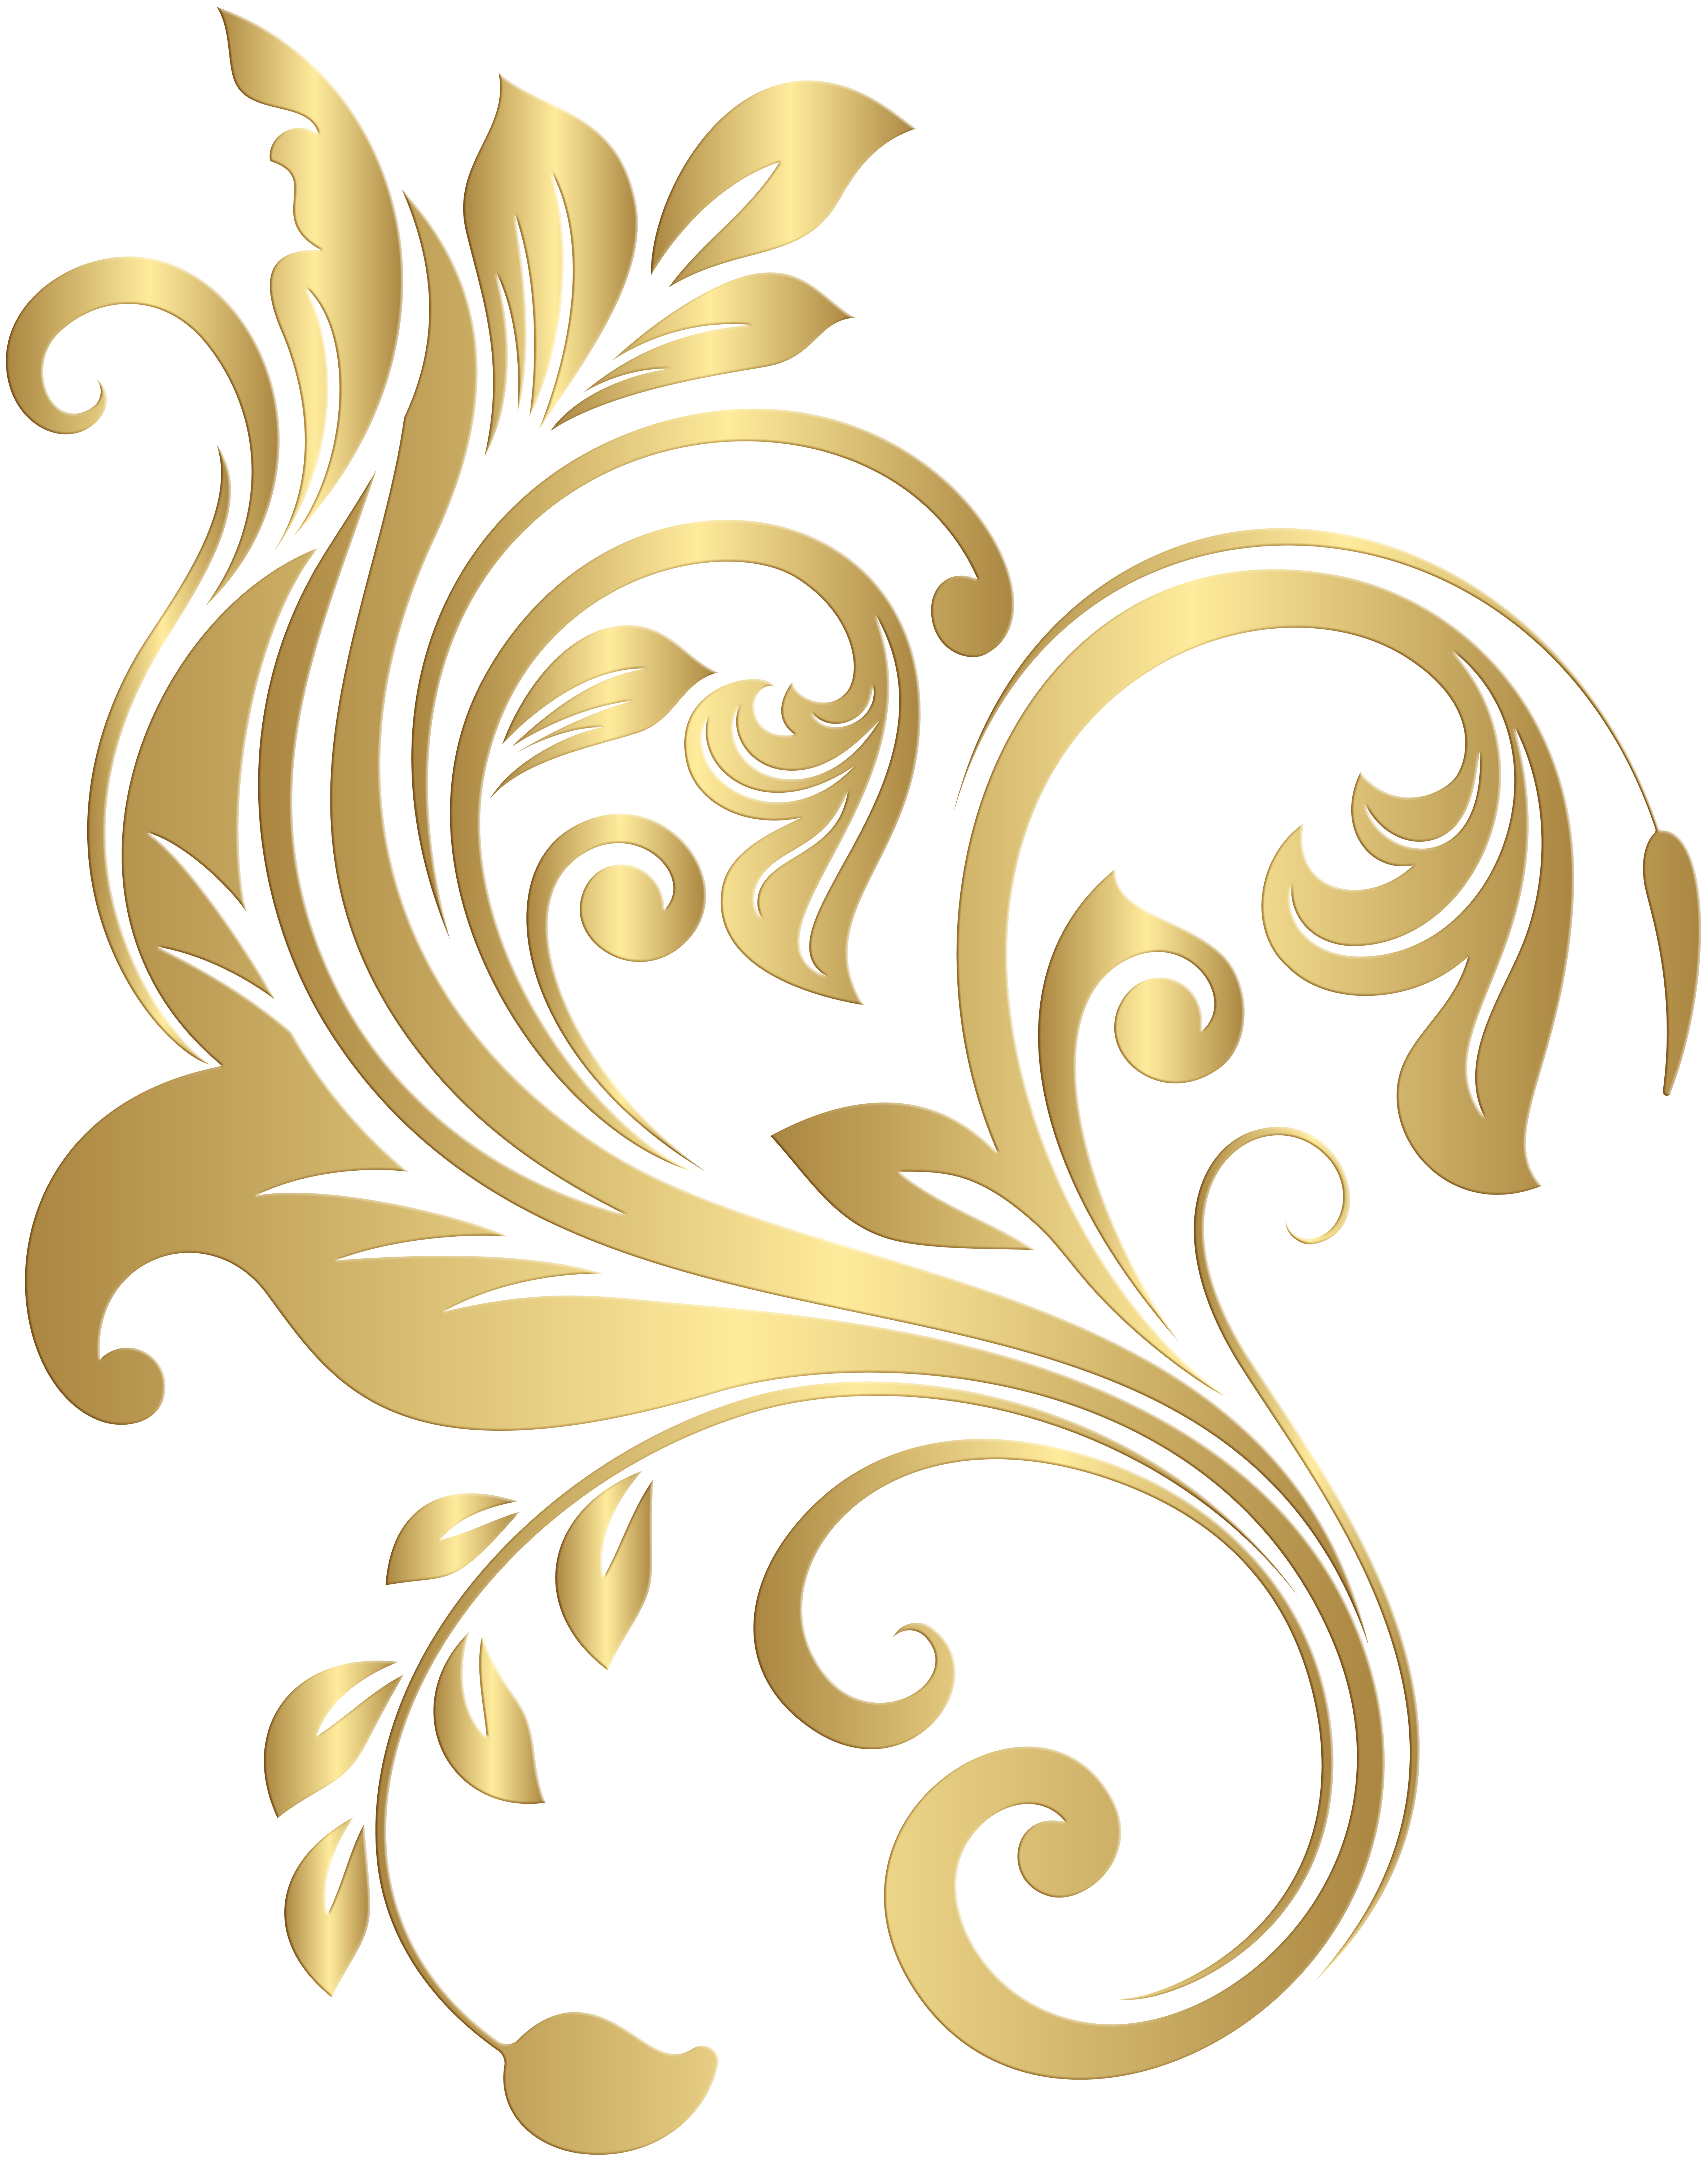 Gold Decorative Element PNG Clip Art Image.